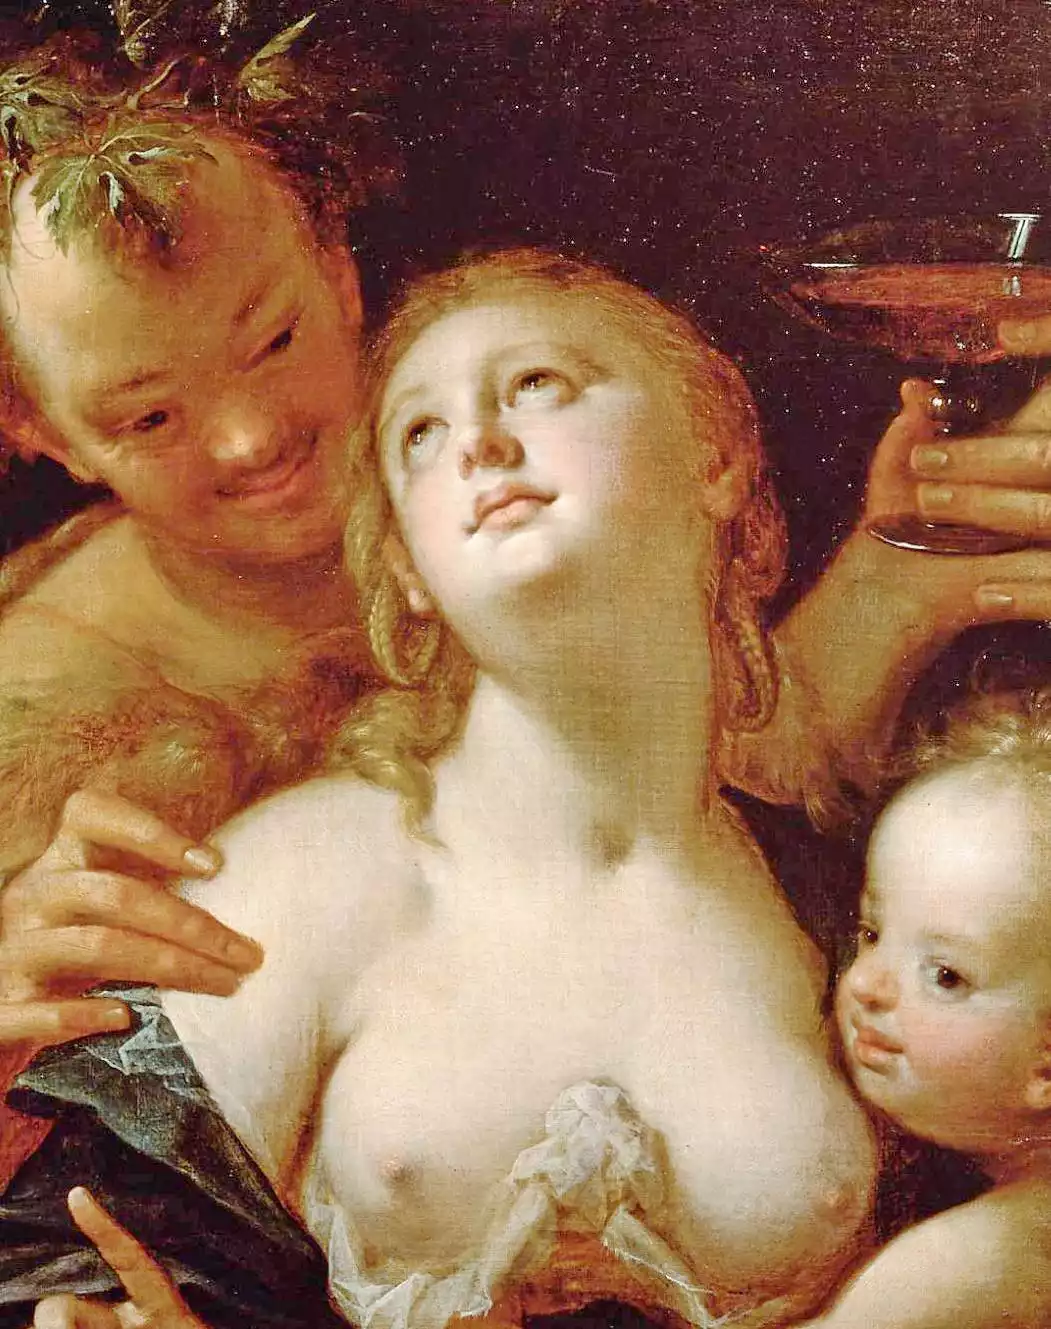 Η Θεά Αφροδίτη, ο Βάκχος, και ο Έρωτας, σε καμβά από τον Hans von Aachen